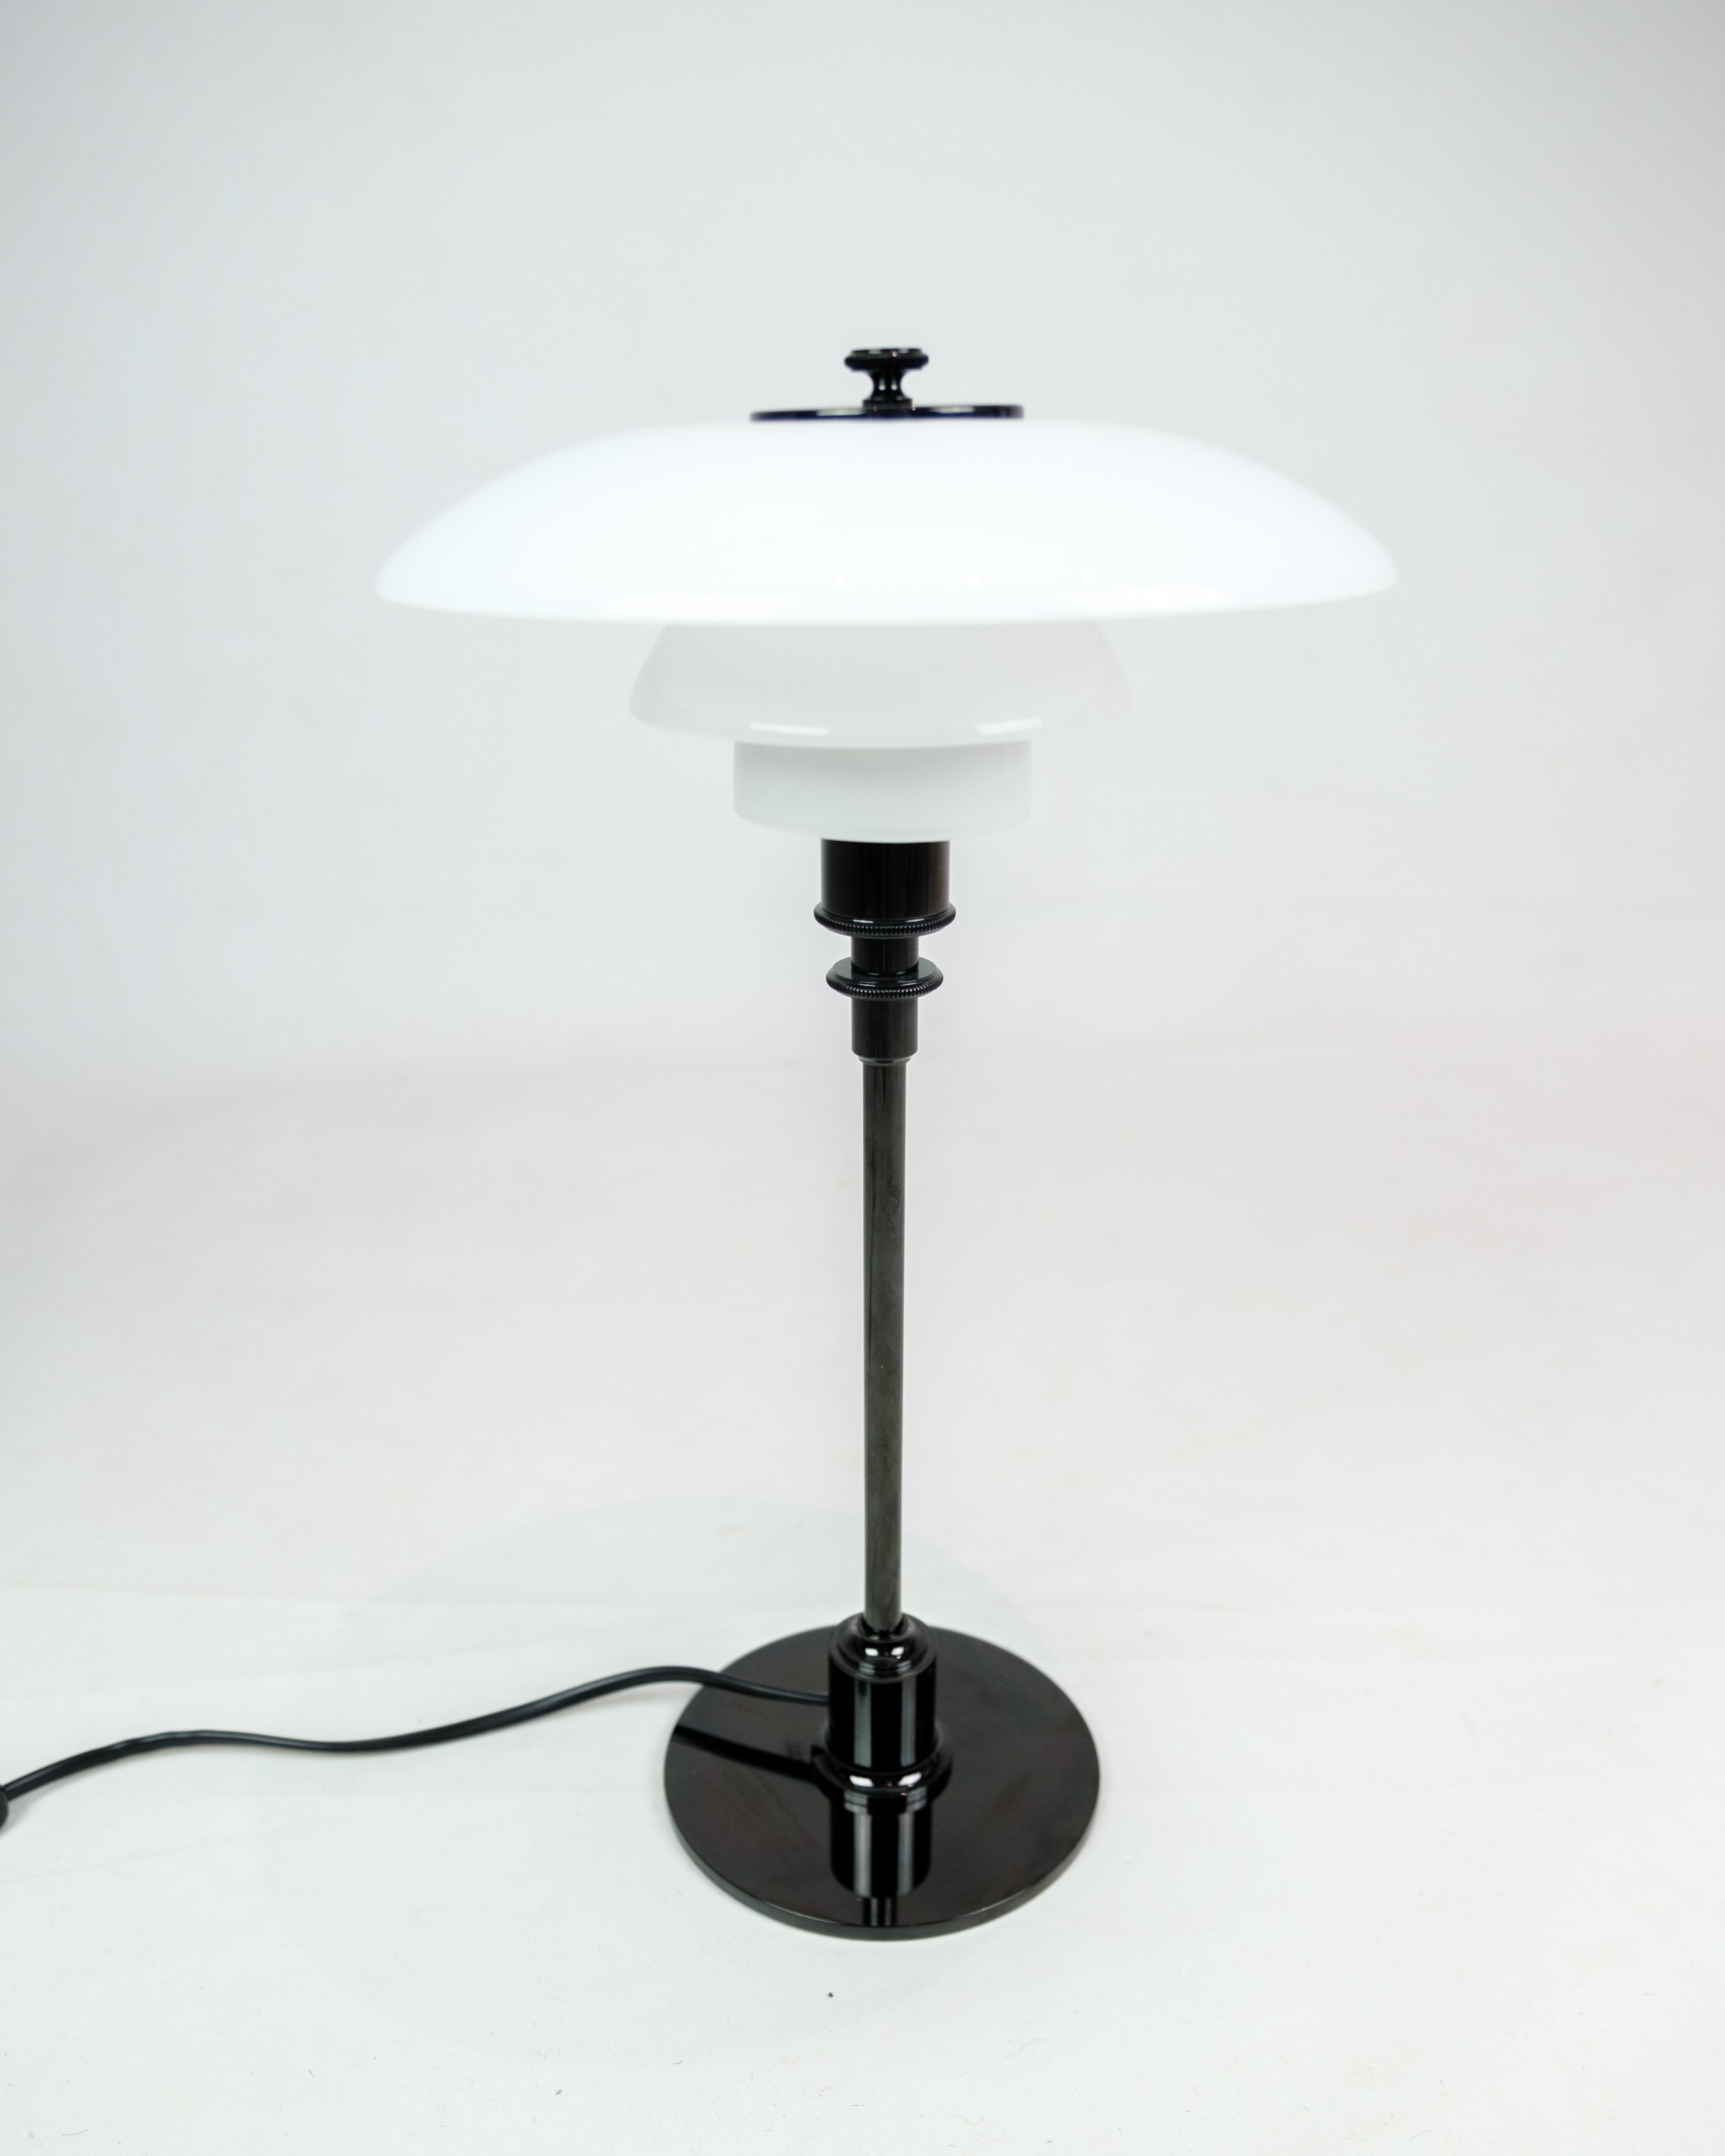 Erleben Sie die zeitlose Eleganz des ikonischen Designs von Poul Henningsen mit dieser Tischleuchte, Modell 3/2, in schwarzem metallisiertem Design, hergestellt von Louis Poulsen. Diese Leuchte ist nicht nur eine Lichtquelle, sie ist ein Meisterwerk